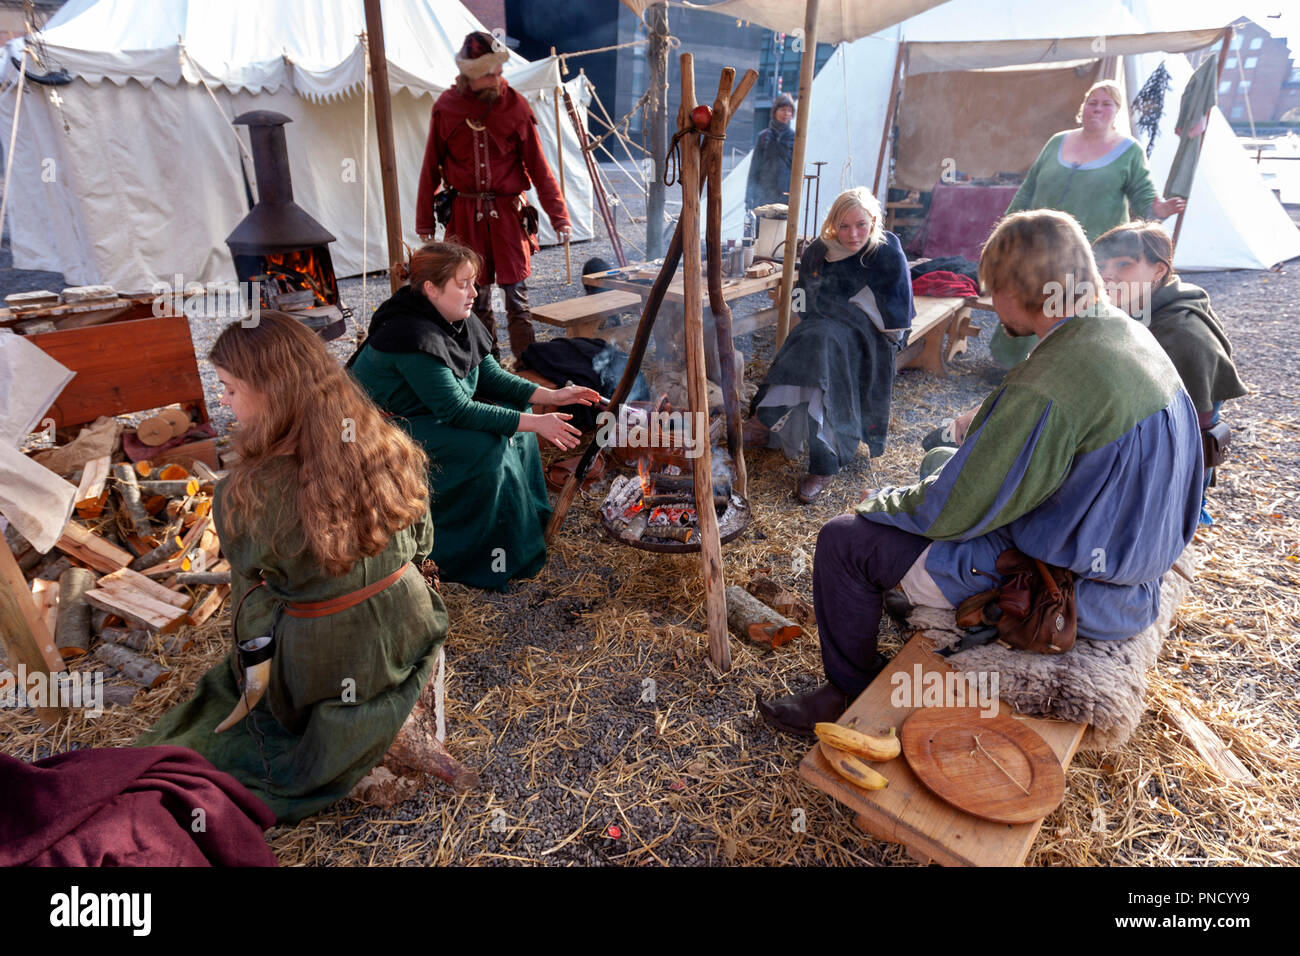 Les gens à l'époque médiévale la douane dans un feu de camp, marché médiéval à Copenhague, Danemark Banque D'Images